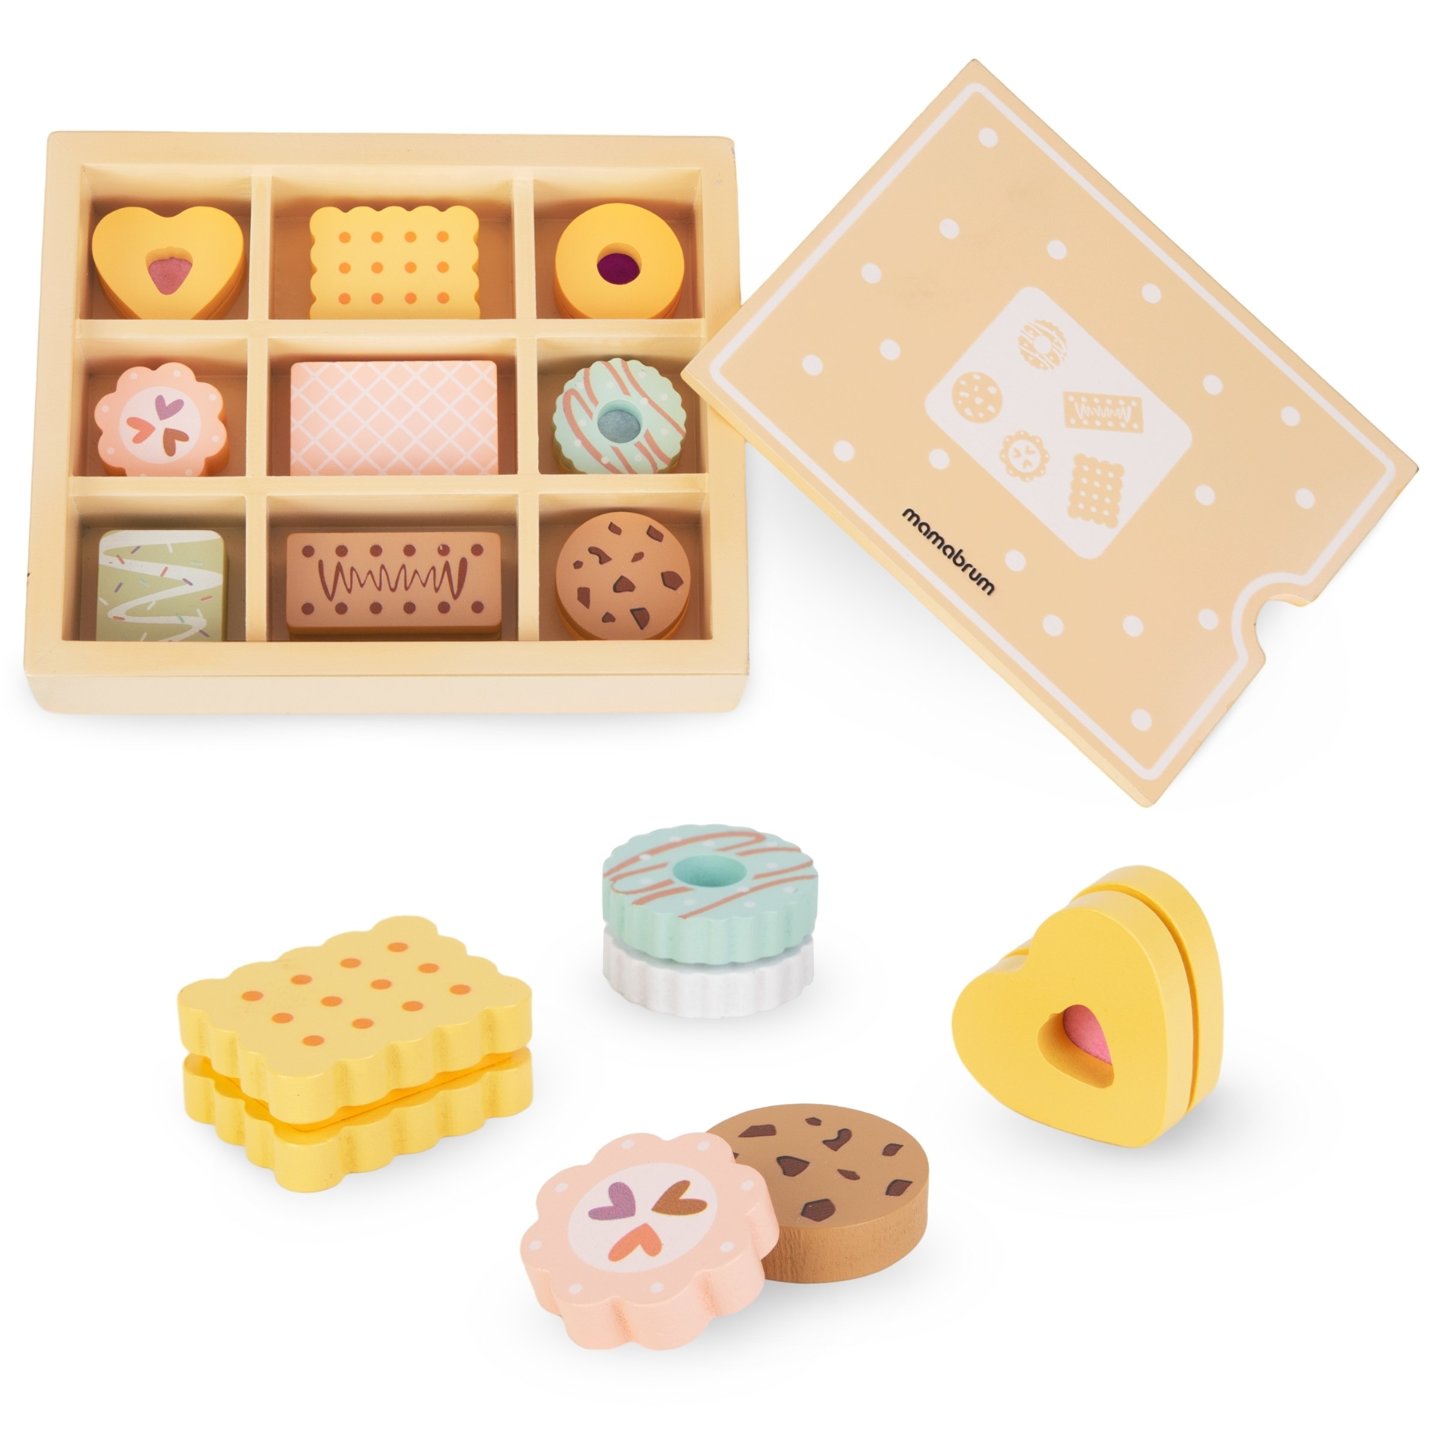 Cutie de biscuiți din lemn - set pentru copii